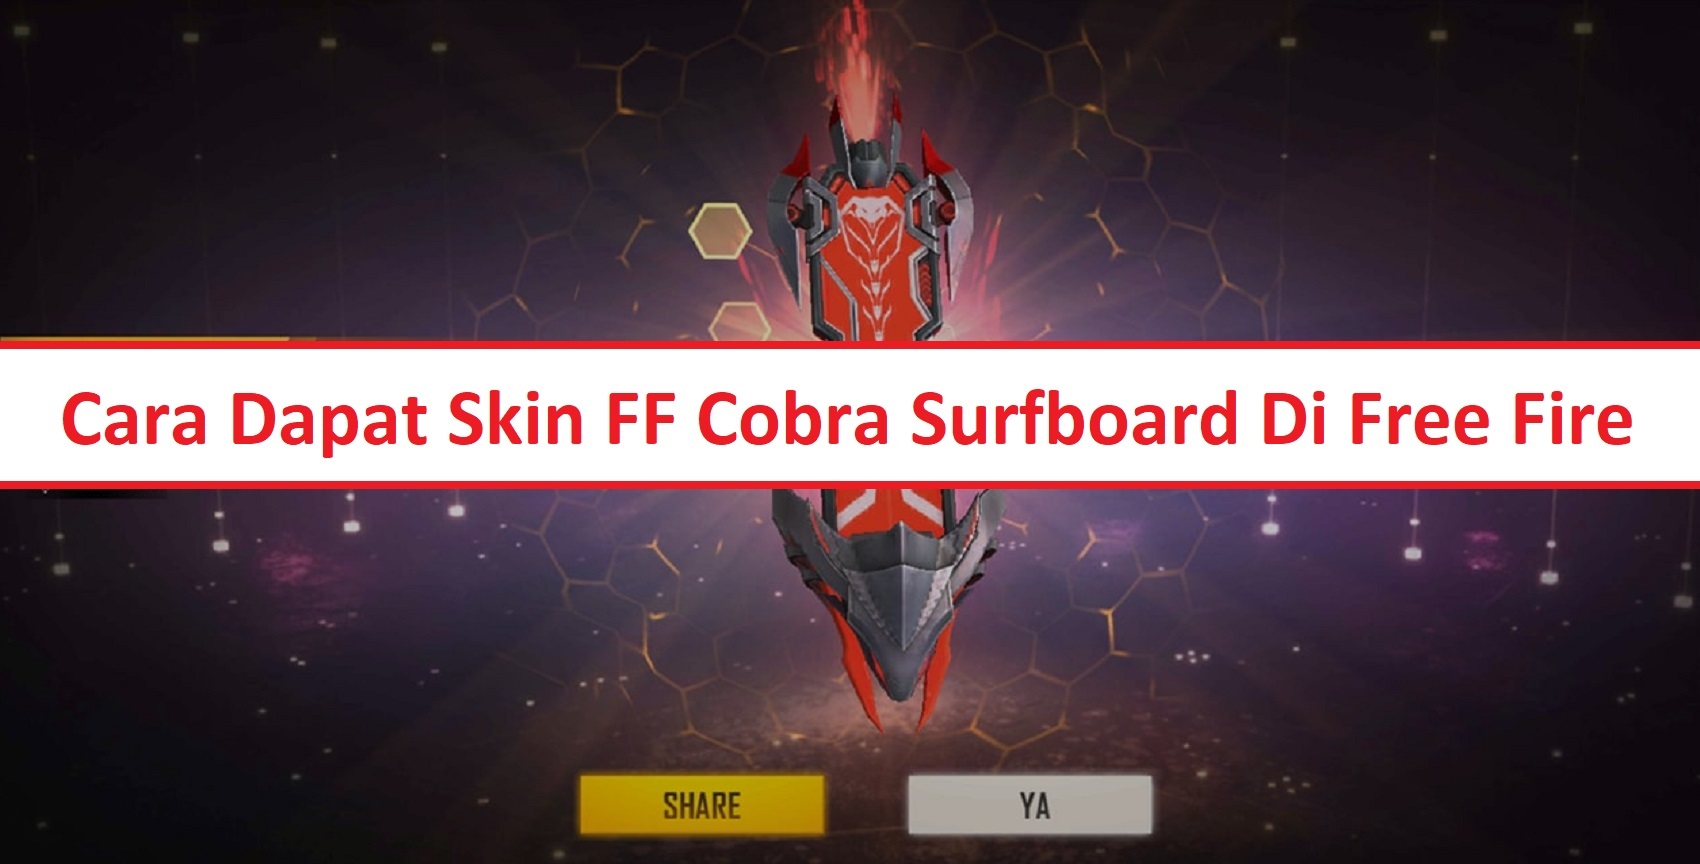 Cara Dapatkan Skin Cobra Surfboard Free Fire (FF)